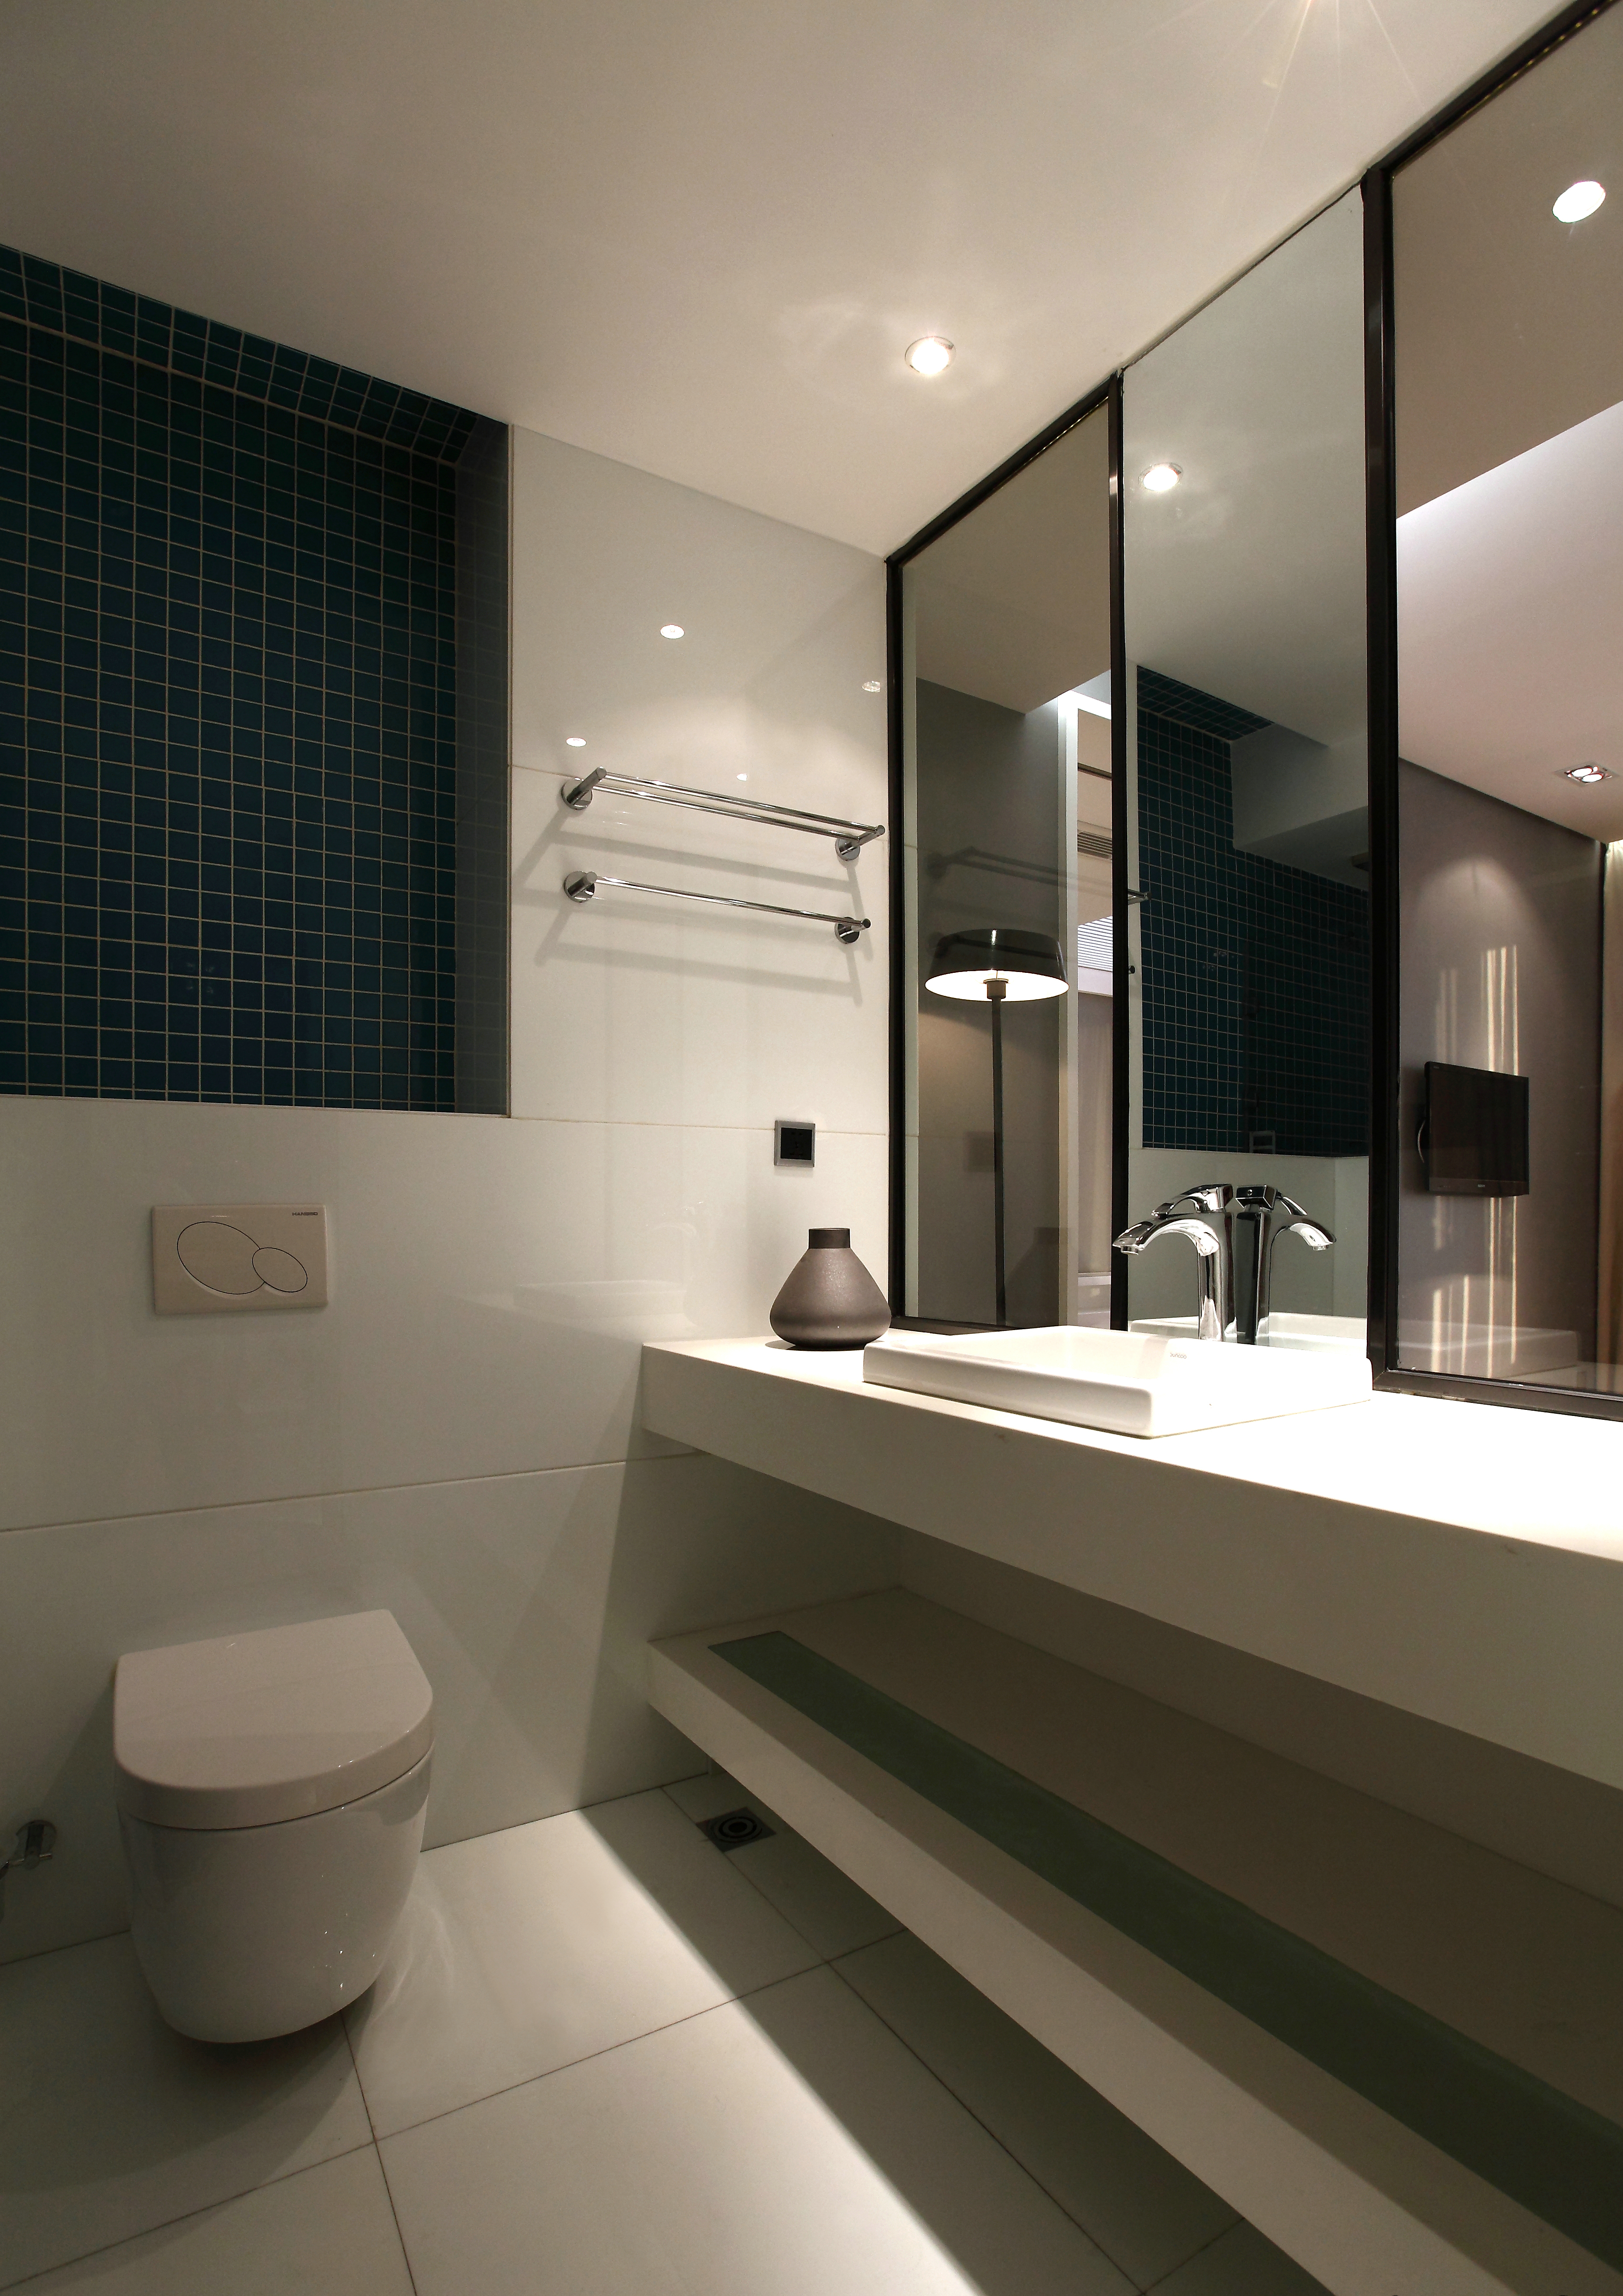 卫生间的镜面设计有效地增大了视觉空间，提高了舒适度。